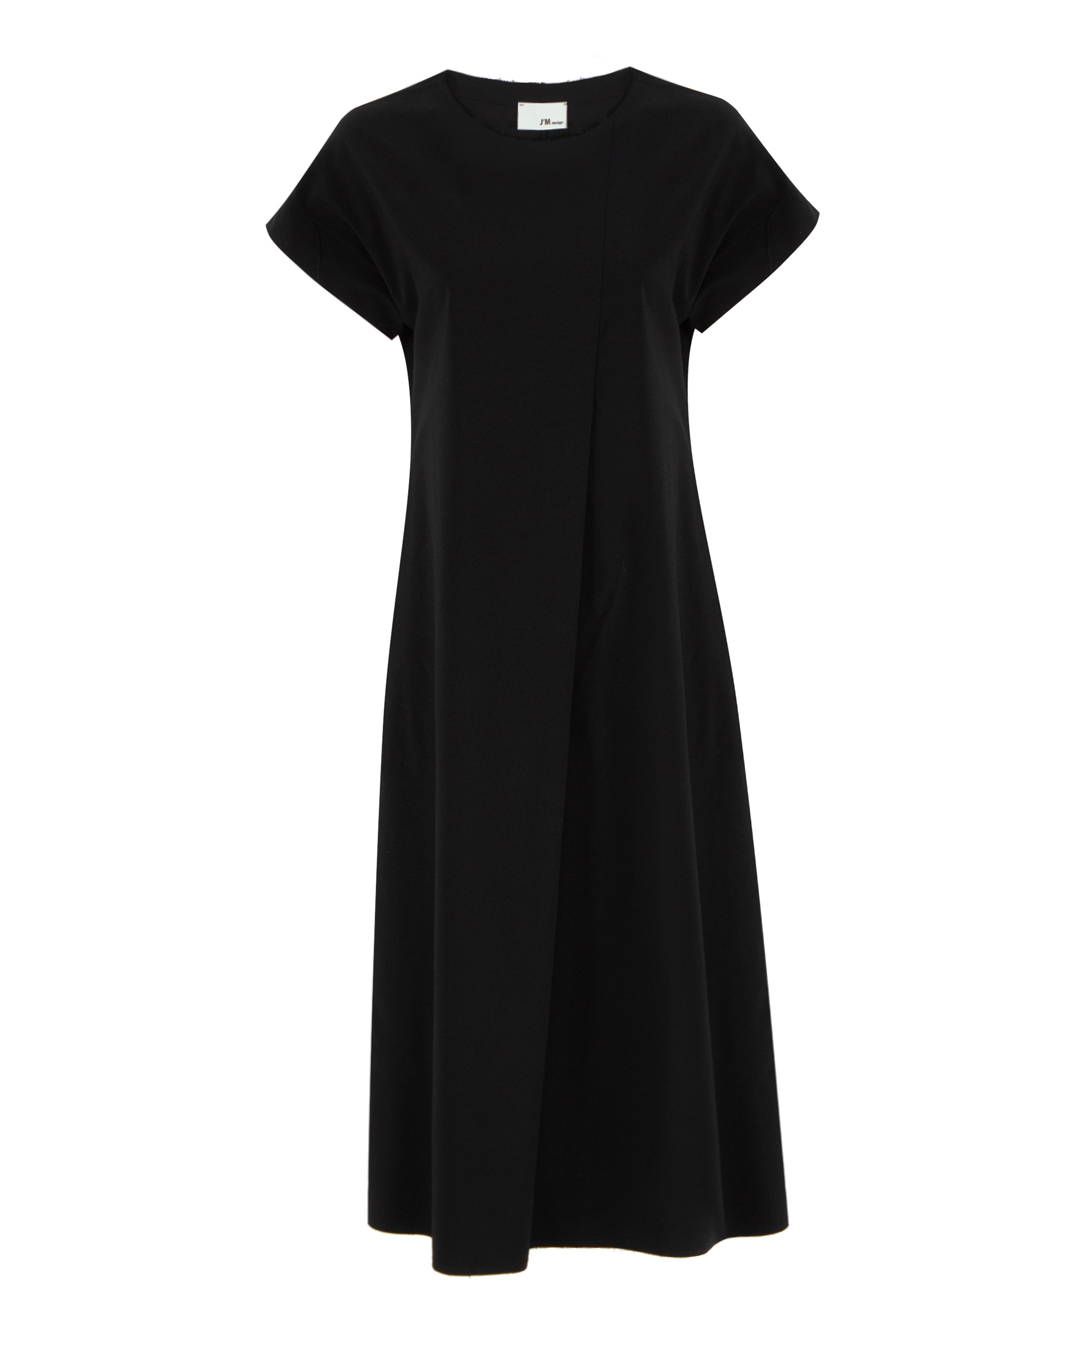 платье J.M design JM-AB1706 черный s, размер s - фото 1